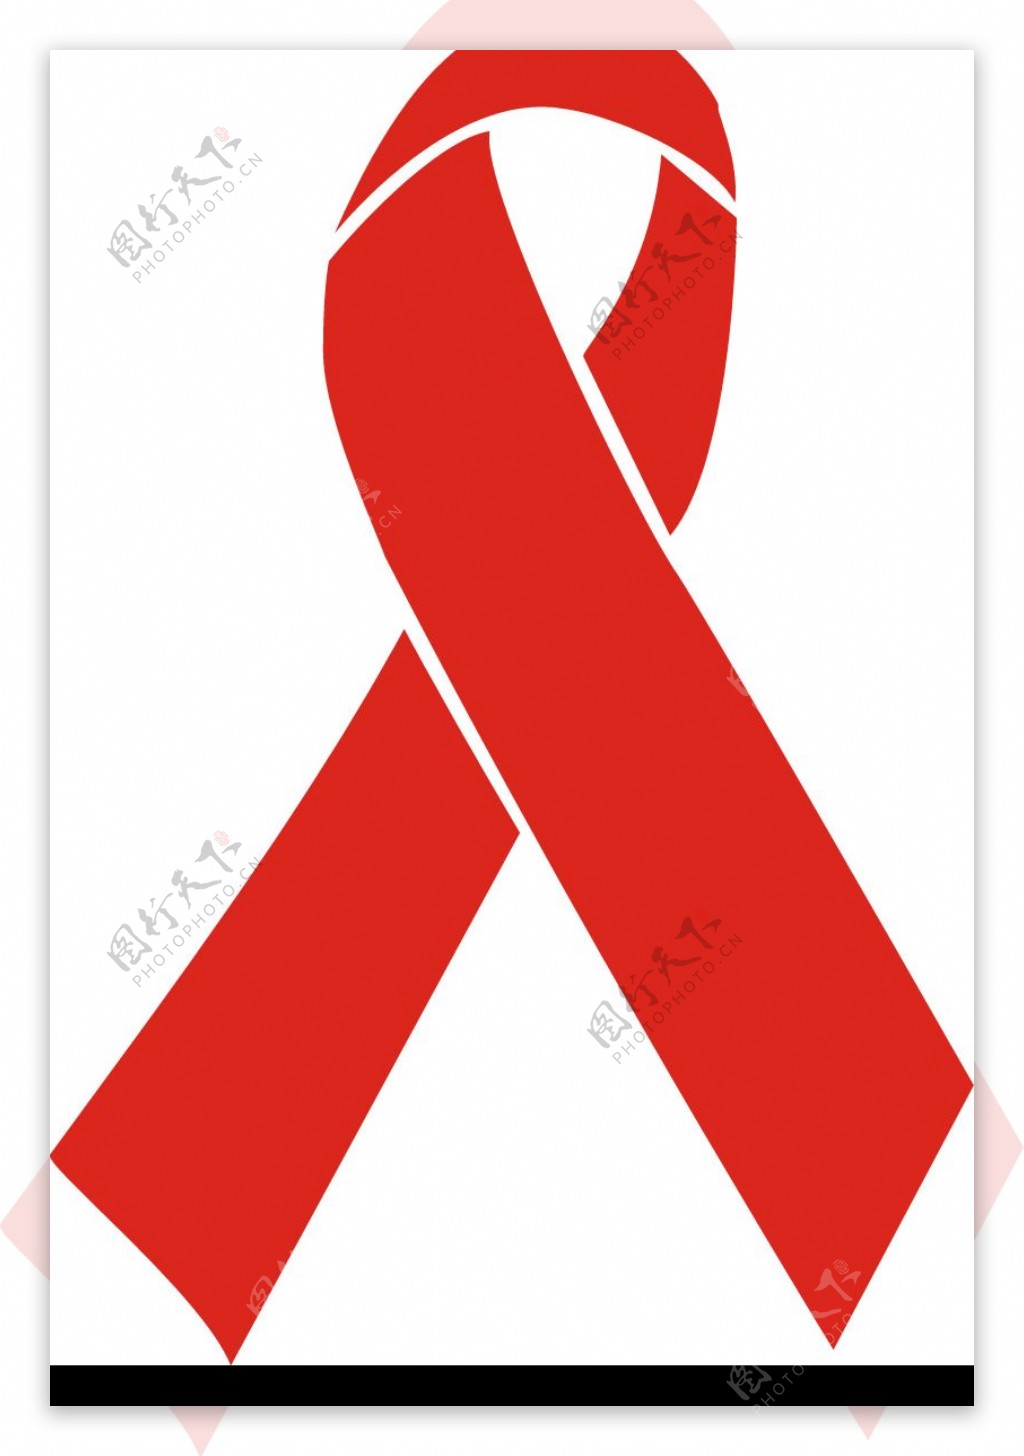 AIDS艾滋病图片